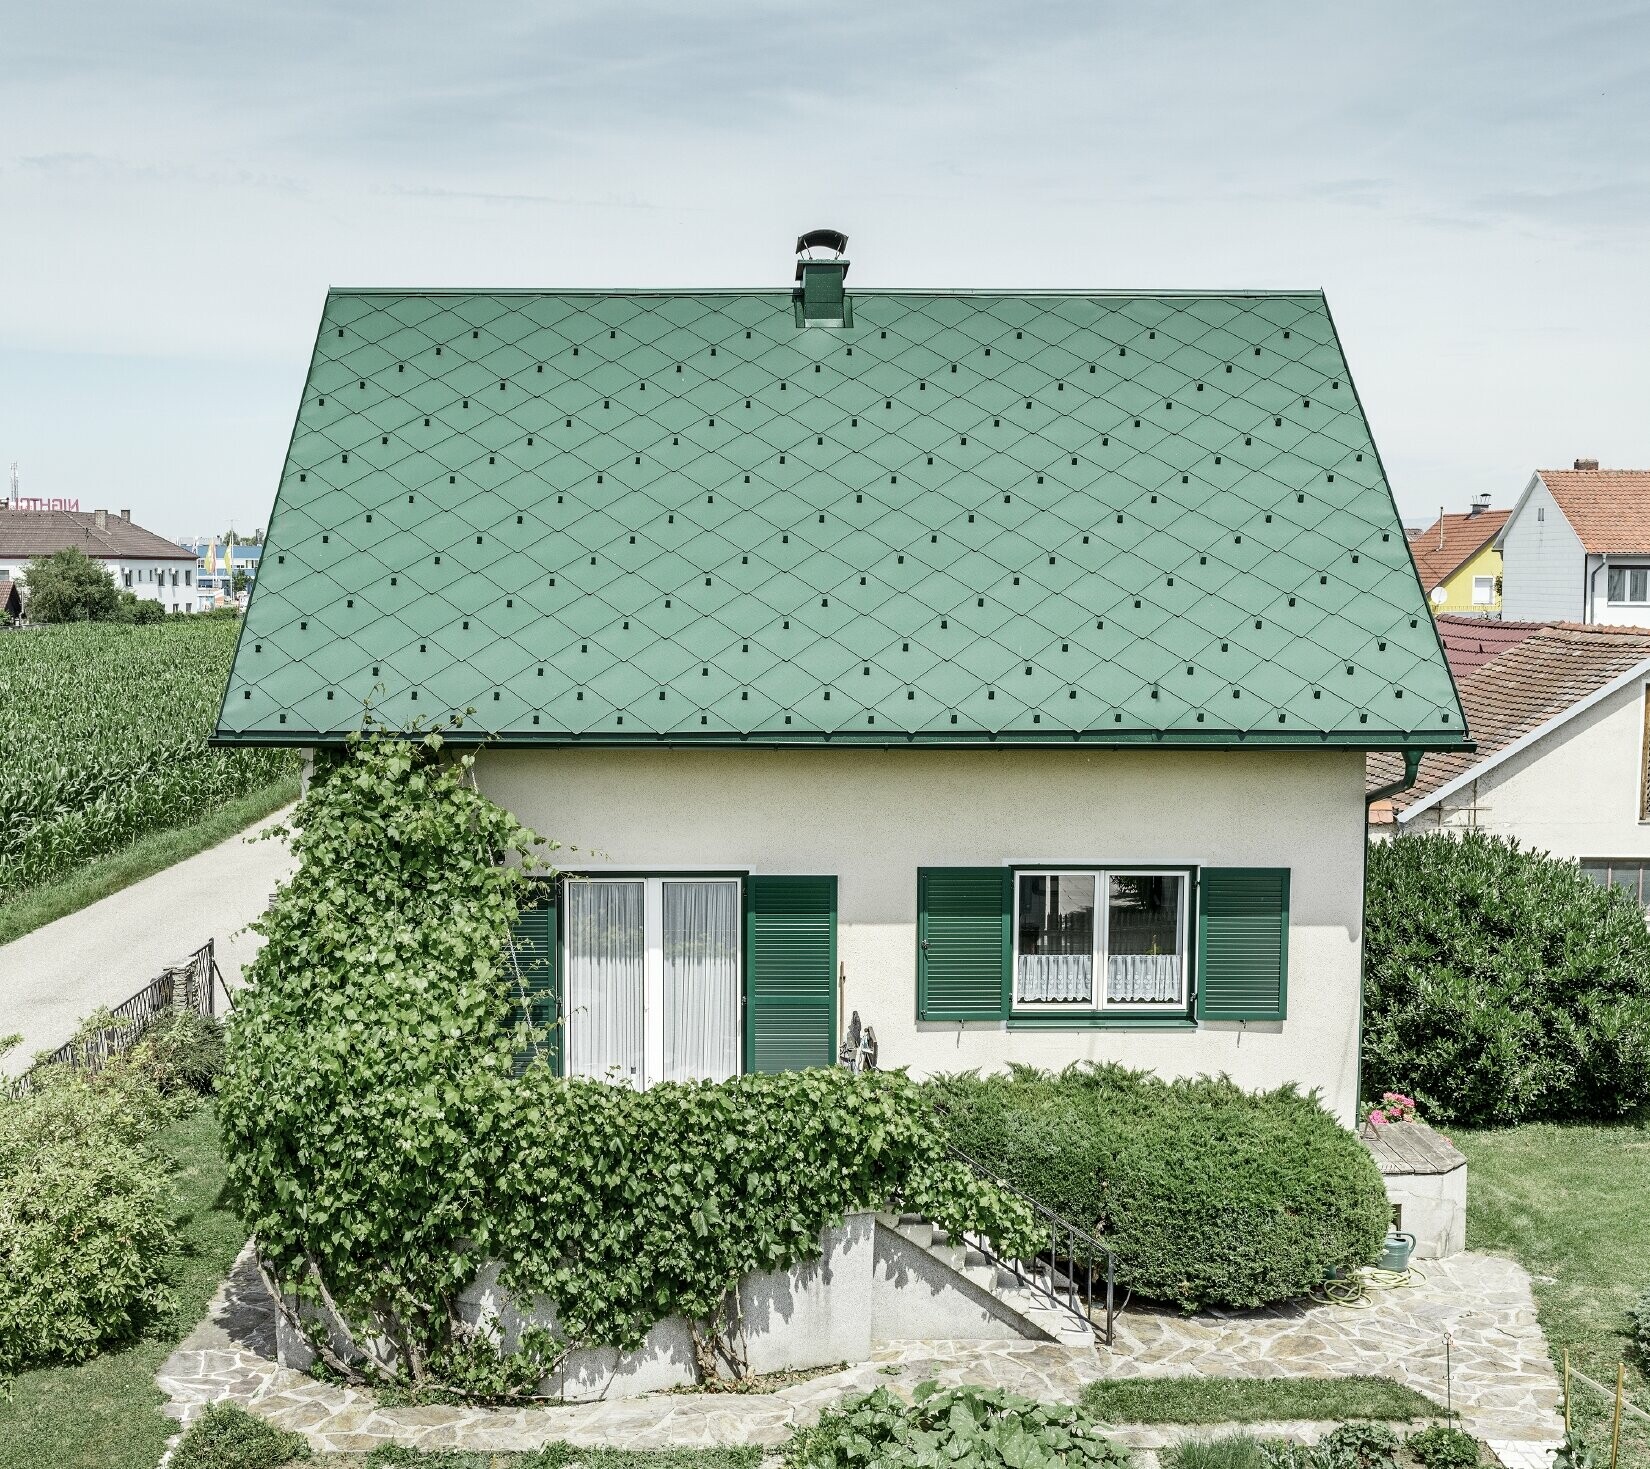 Casa unifamiliare classica con tetto a due falde con copertura in alluminio di colore verde muschio e  persiane verdi. Il tetto è stato coperto con scaglie PREFA 44 × 44 in P.10 verde muschio.